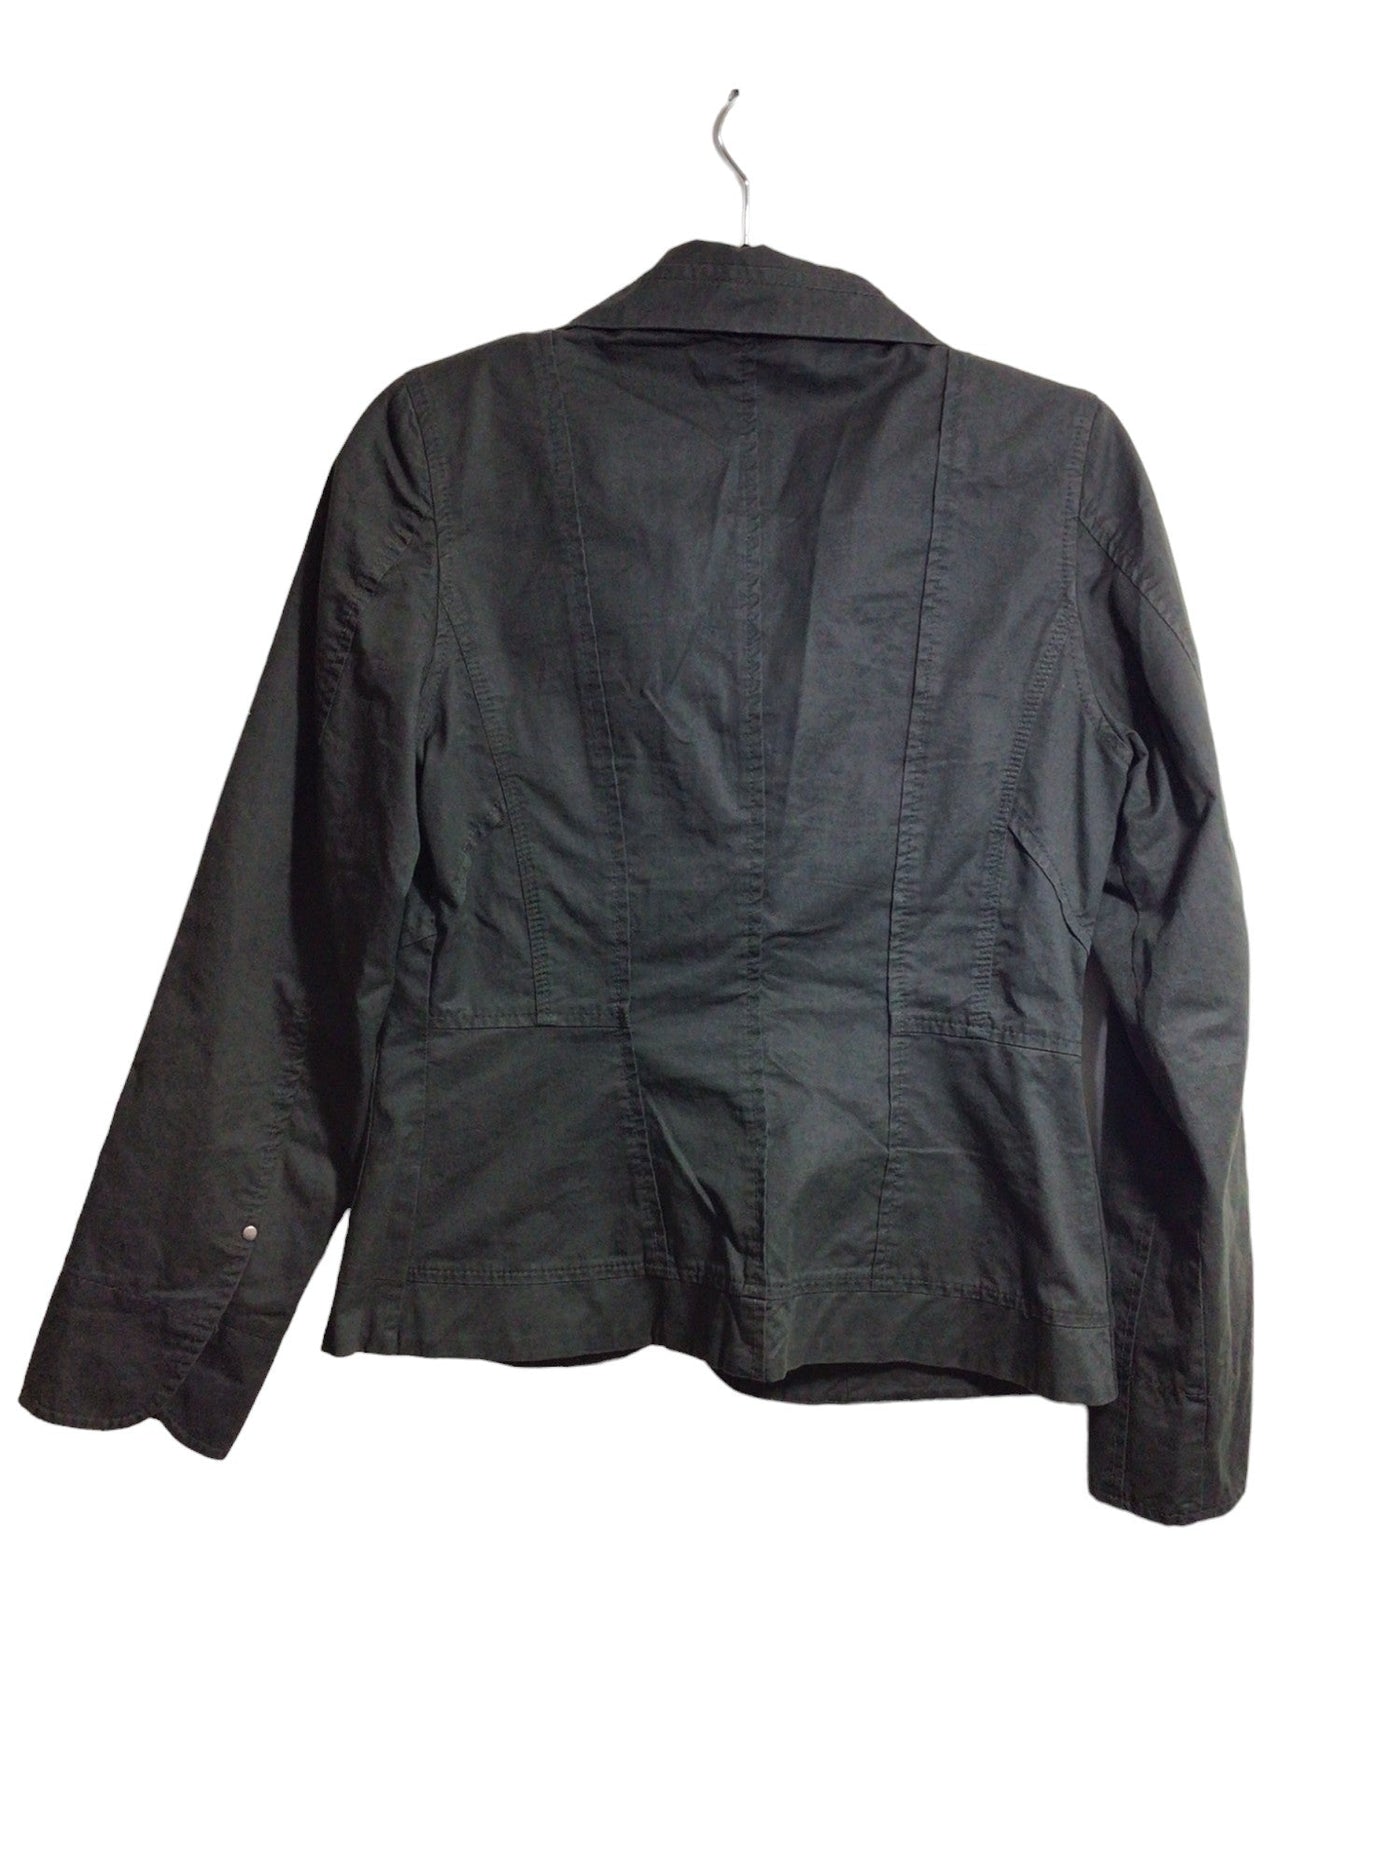 SANDWICH Blazers Regular fit in Black - Size 36 | 15 $ KOOP